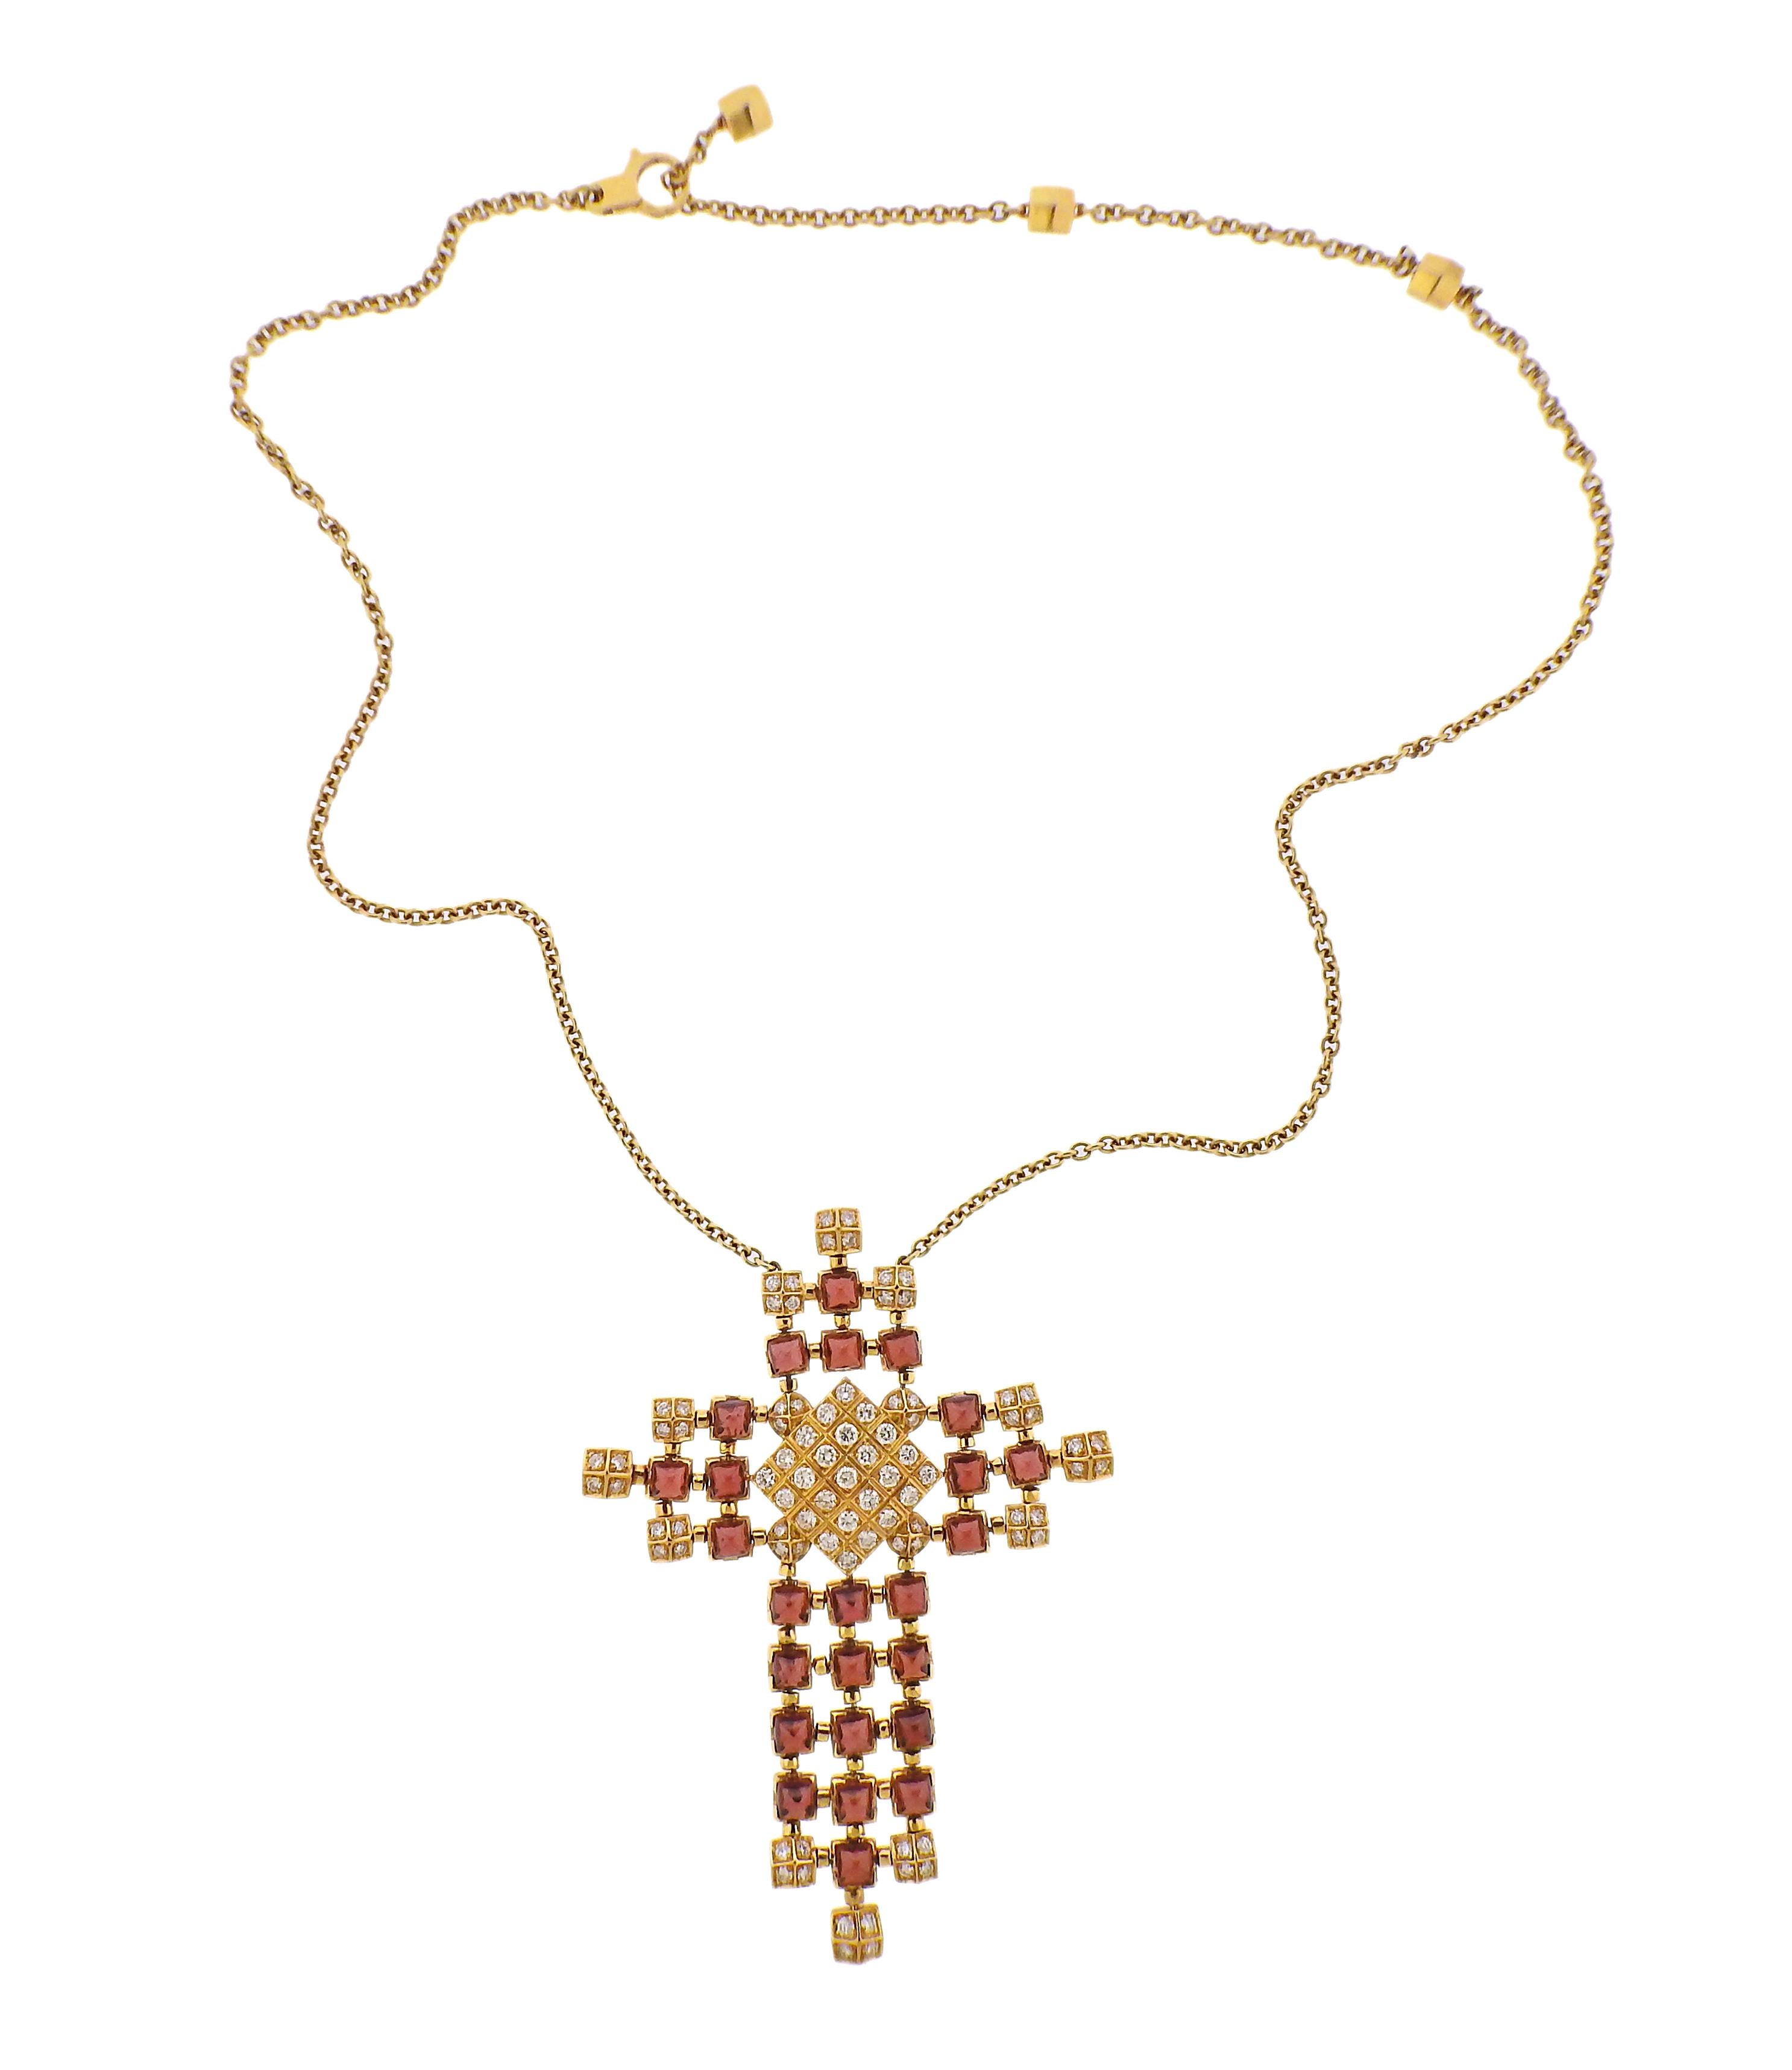 Collier à longue chaîne en or 18k avec un grand pendentif en forme de croix, serti de rhodolite taillée en pain de sucre et d'environ 2,55ctw de diamants. Le collier mesure 20